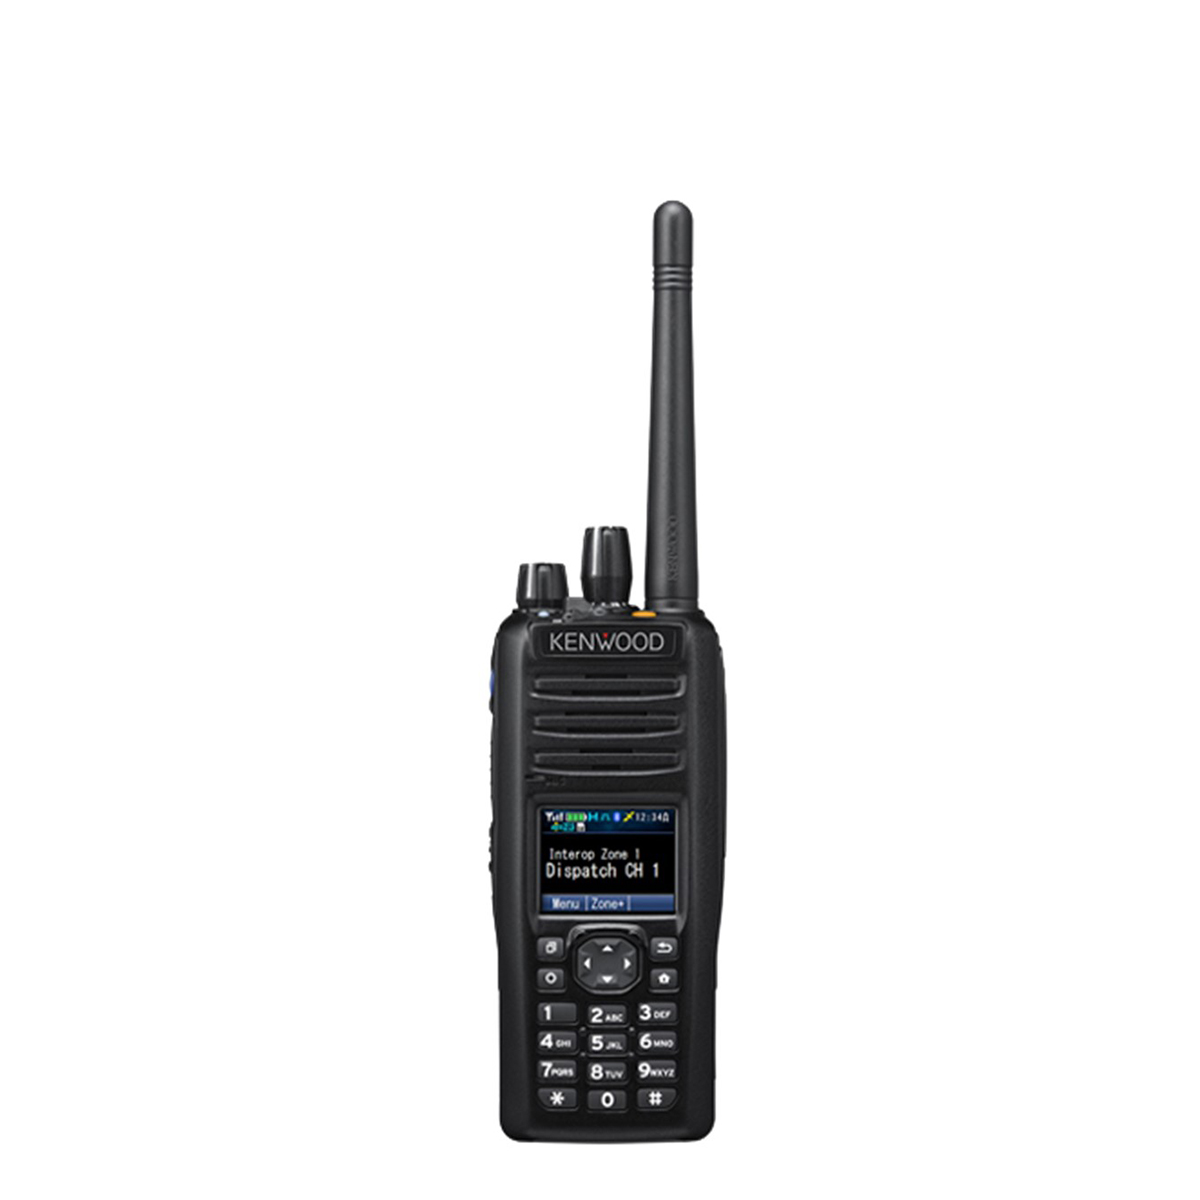 Radio Kenwood Digital NX-5400 700/800 MHz con Teclado Completo